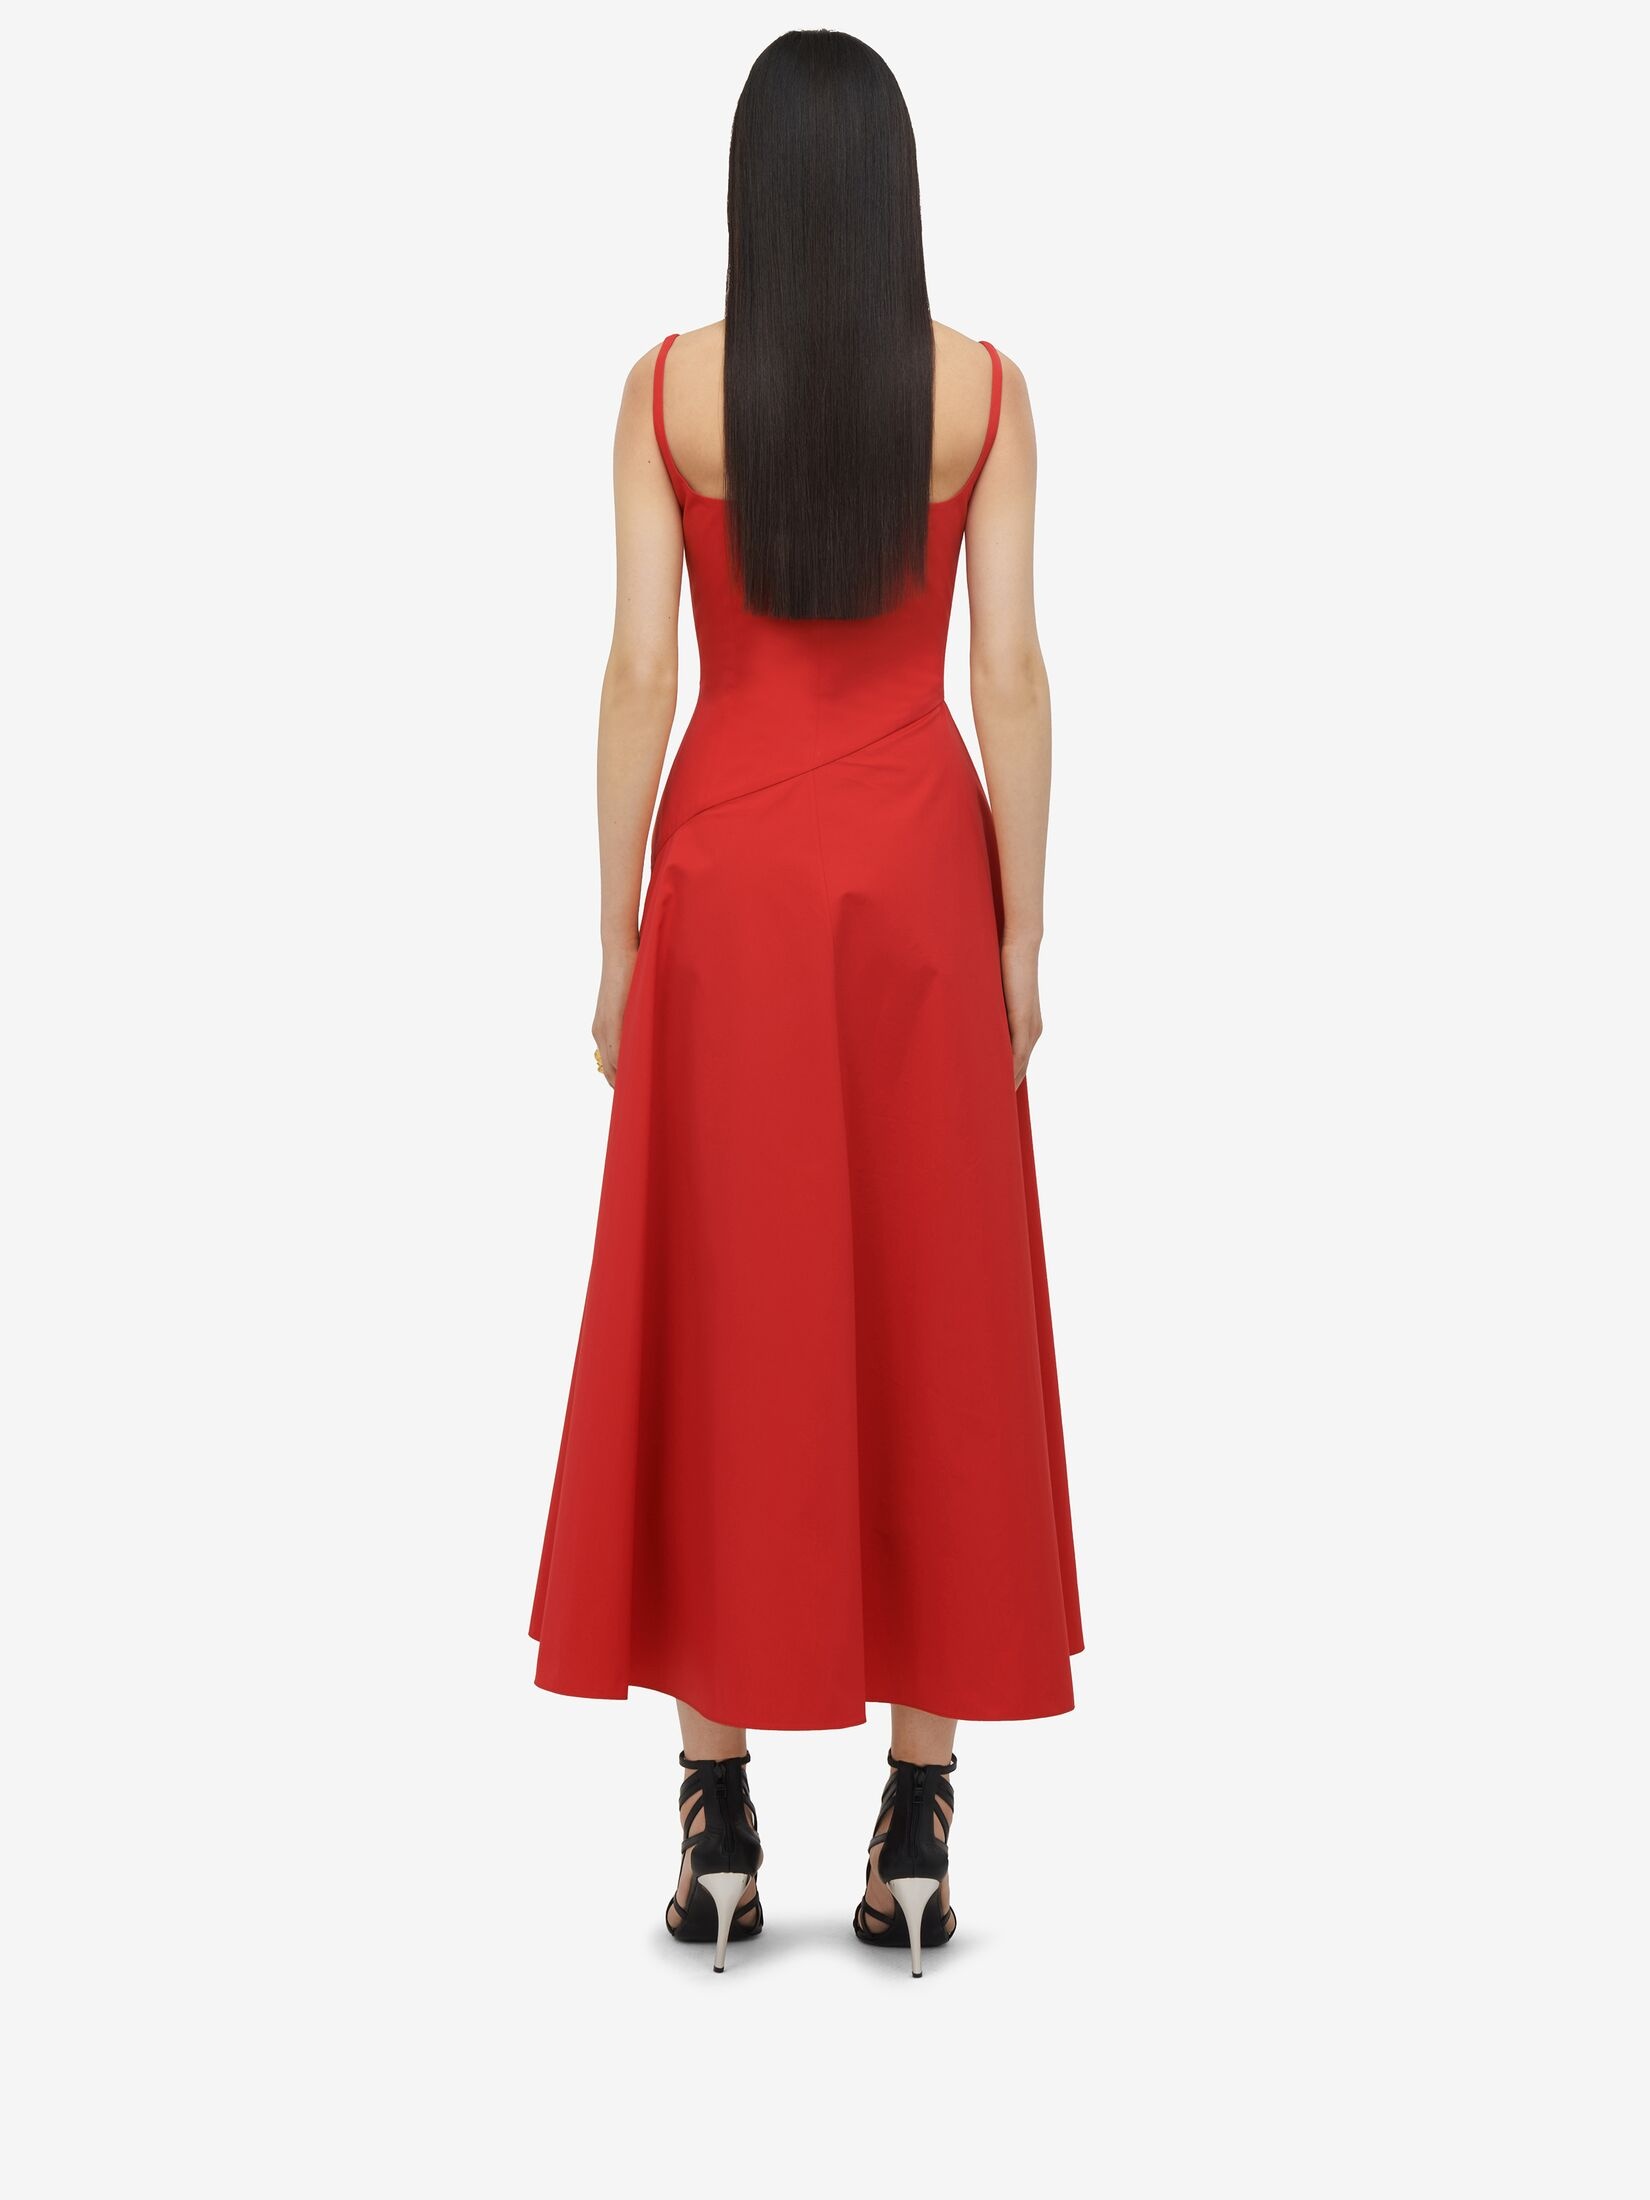 Women's Sweetheart Neckline Midi Dress in Lust Red - 4